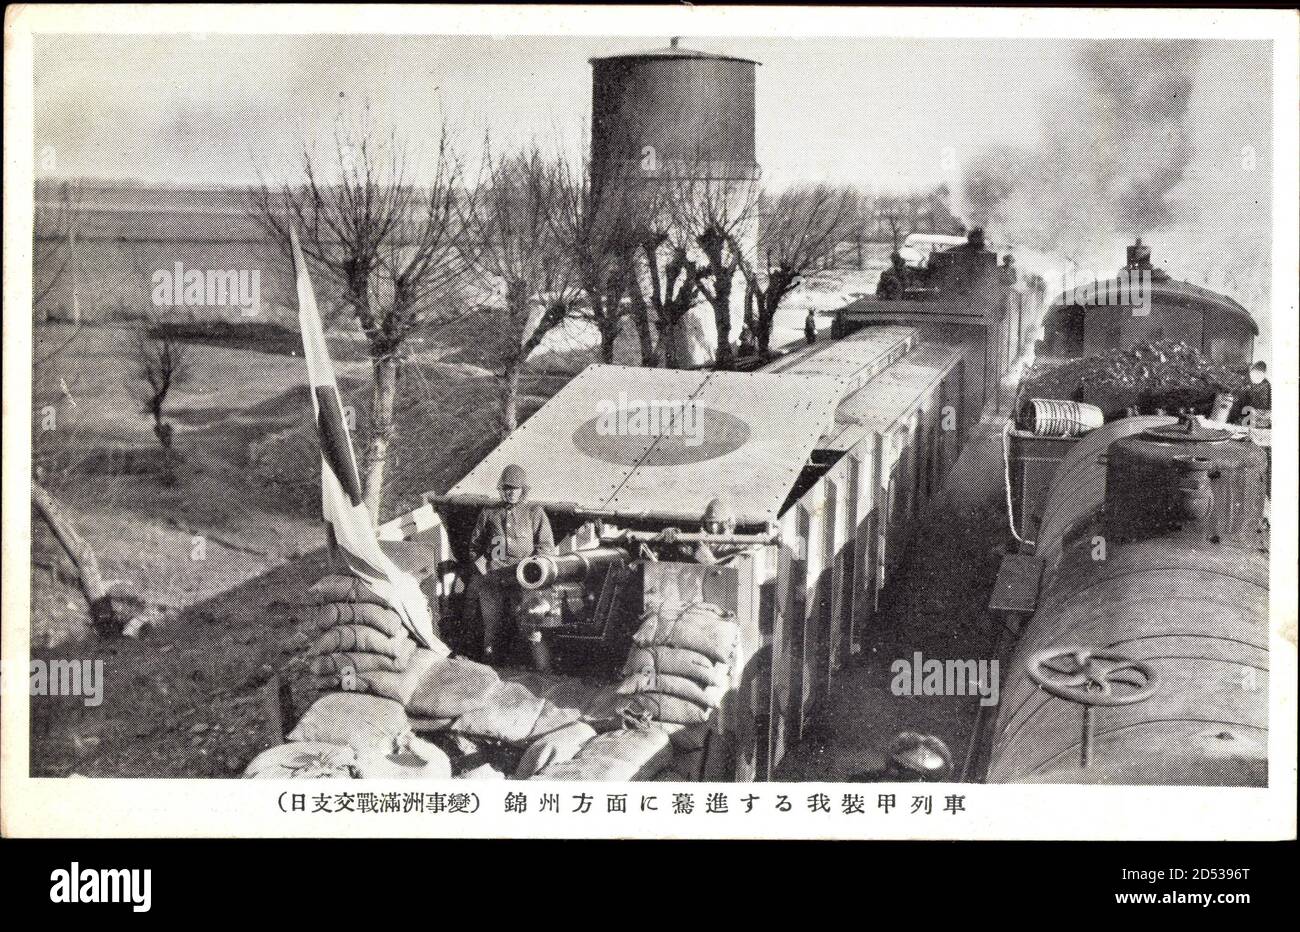 Japanische Truppen in China,Mandschurei,Zweiter Weltkrieg,Eisenbahn,Geschütz | usage worldwide Stock Photo